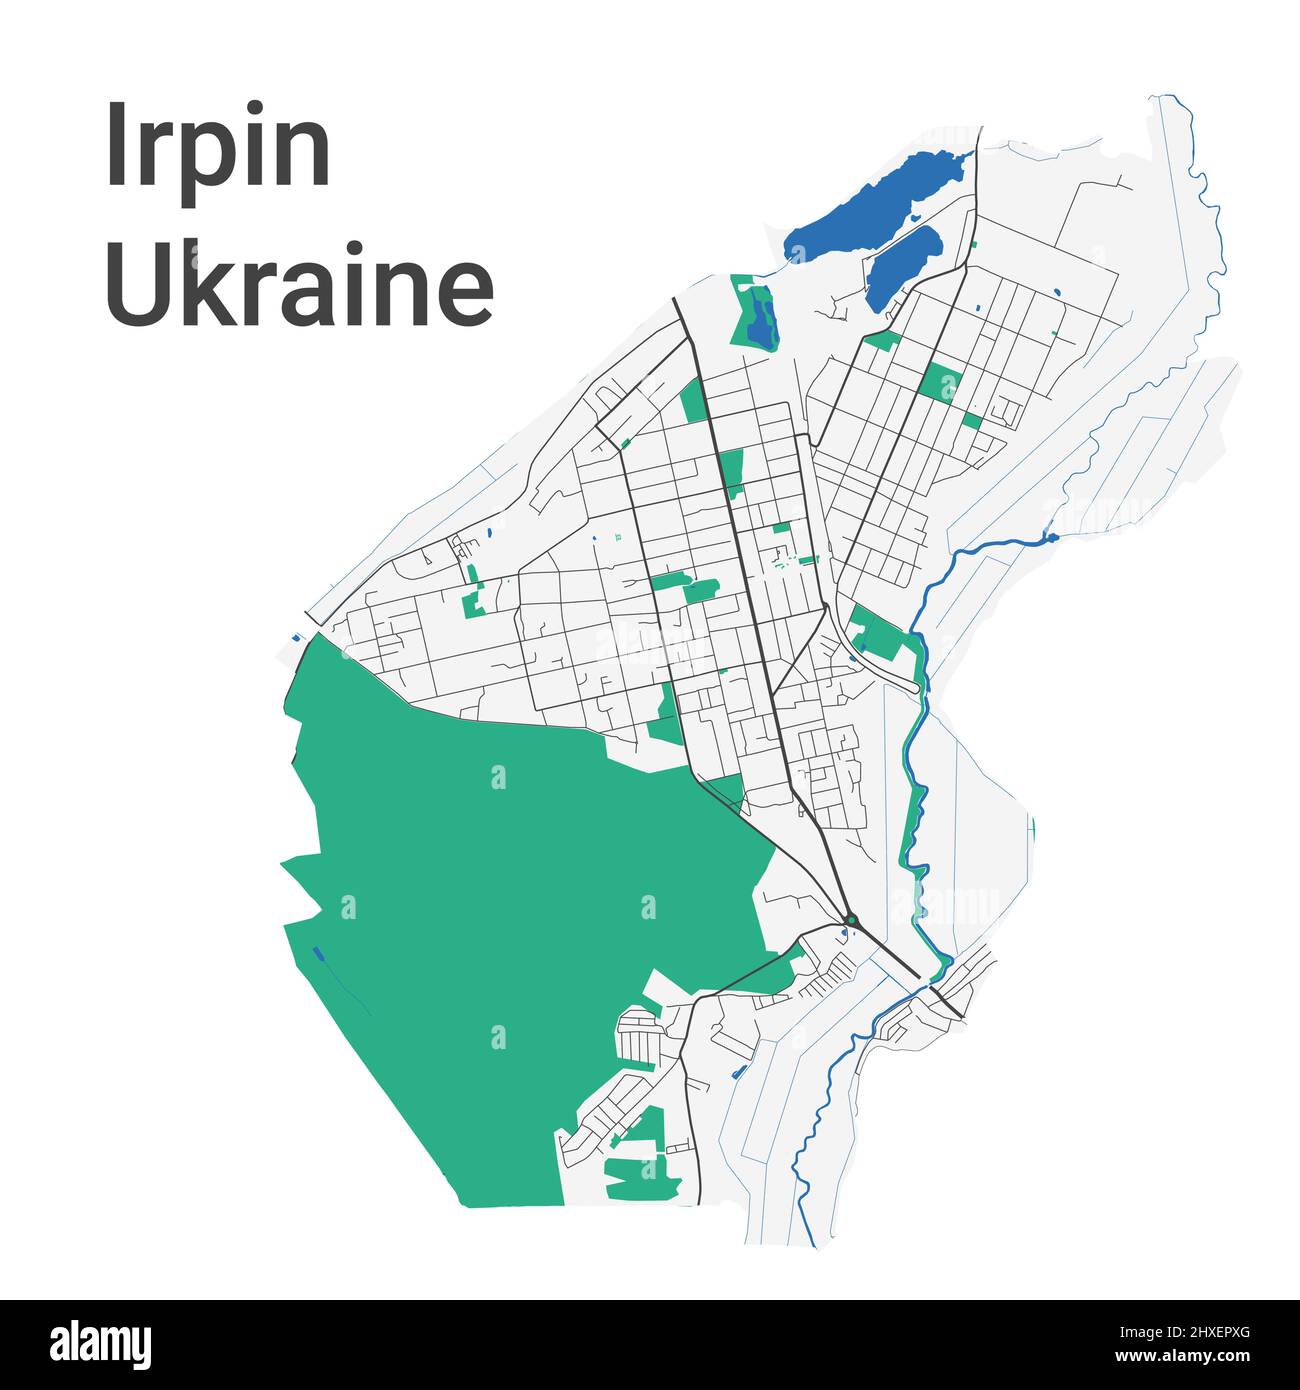 Mappa vettoriale Irpin. Mappa dettagliata dell'area amministrativa della città di Irpin. Panorama urbano. Illustrazione vettoriale senza royalty. Mappa stradale con autostrade, fiumi Illustrazione Vettoriale